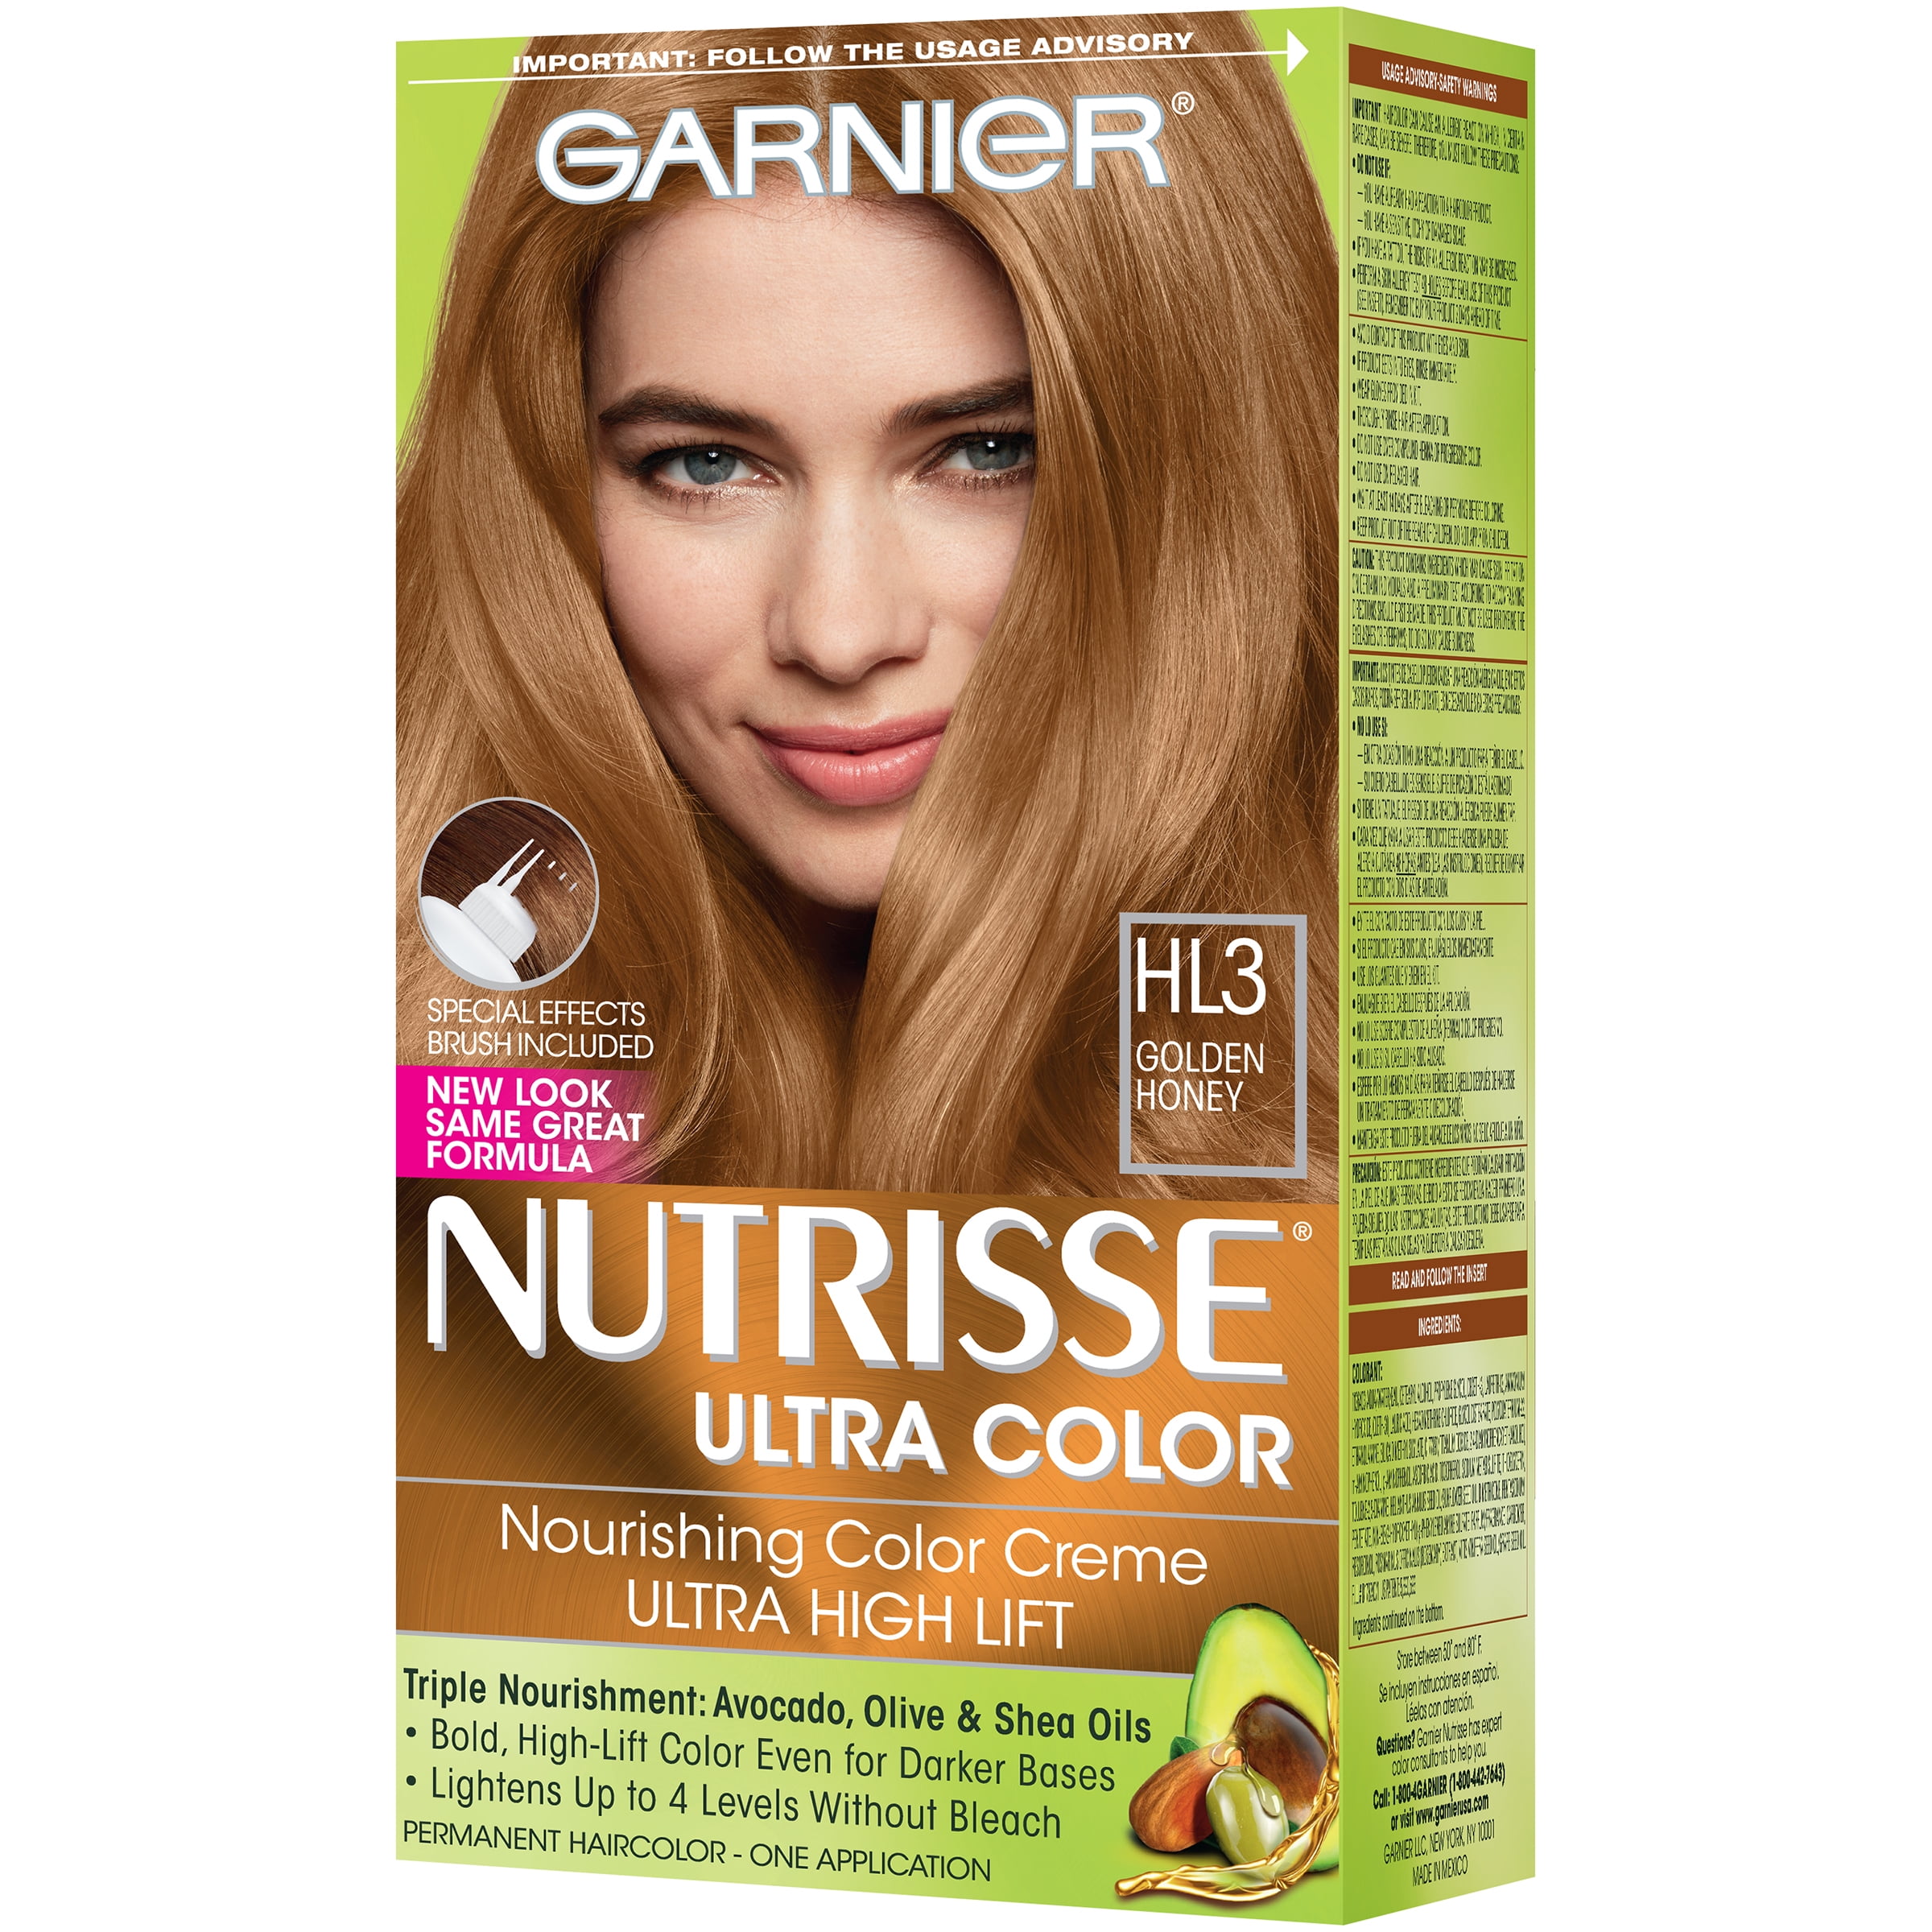 Garnier Nutrisse Ultra Color Nourishing Bold Permanent Hair Color Creme,  HL3 Golden Honey